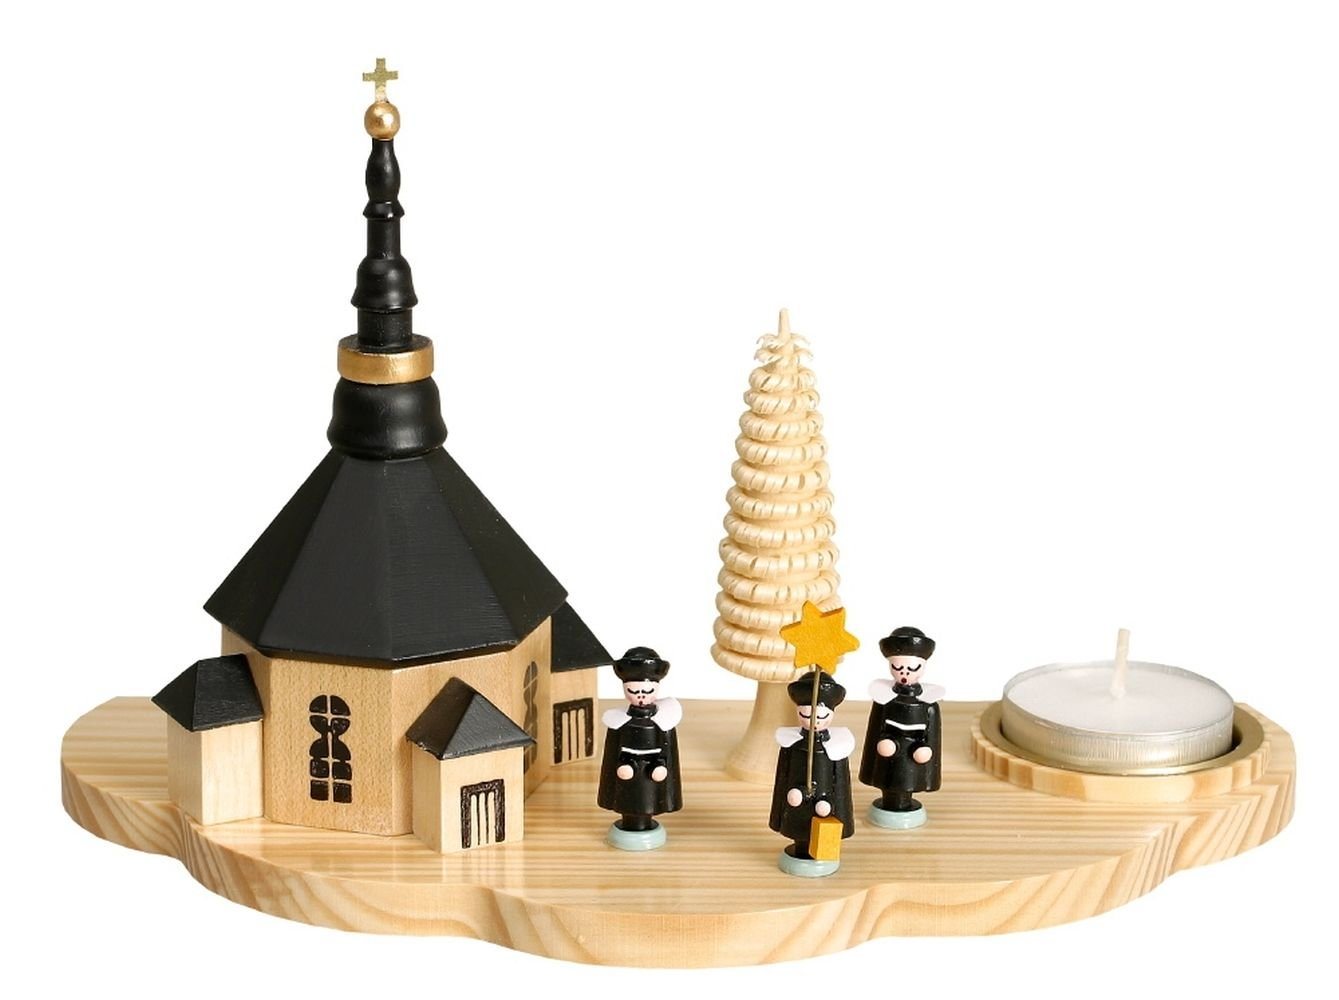 Teelichthalter Kerzenhalter Lichthalter mit Seiffener Kirche und Kurrende dunkel Teel, Ringelbäumchen, naturfarbene achteckige Kirche, kleine Figuren von OTTO